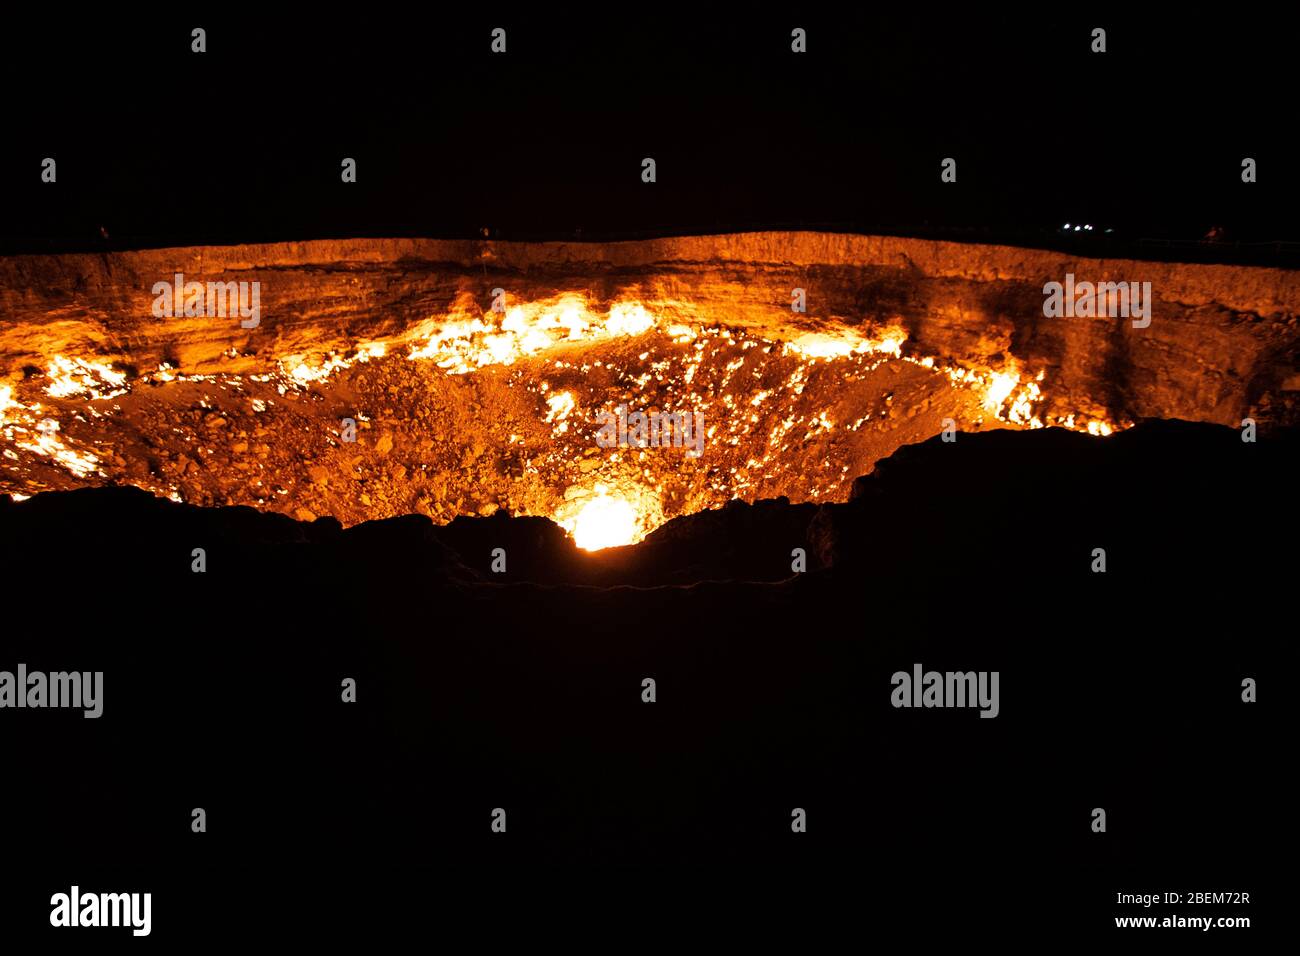 Foto nocturna del Cráter Darvasa, también conocido como la puerta del Infierno, el cráter de gas en llamas en Darvaza (Darvasa), Turkmenistán Foto de stock